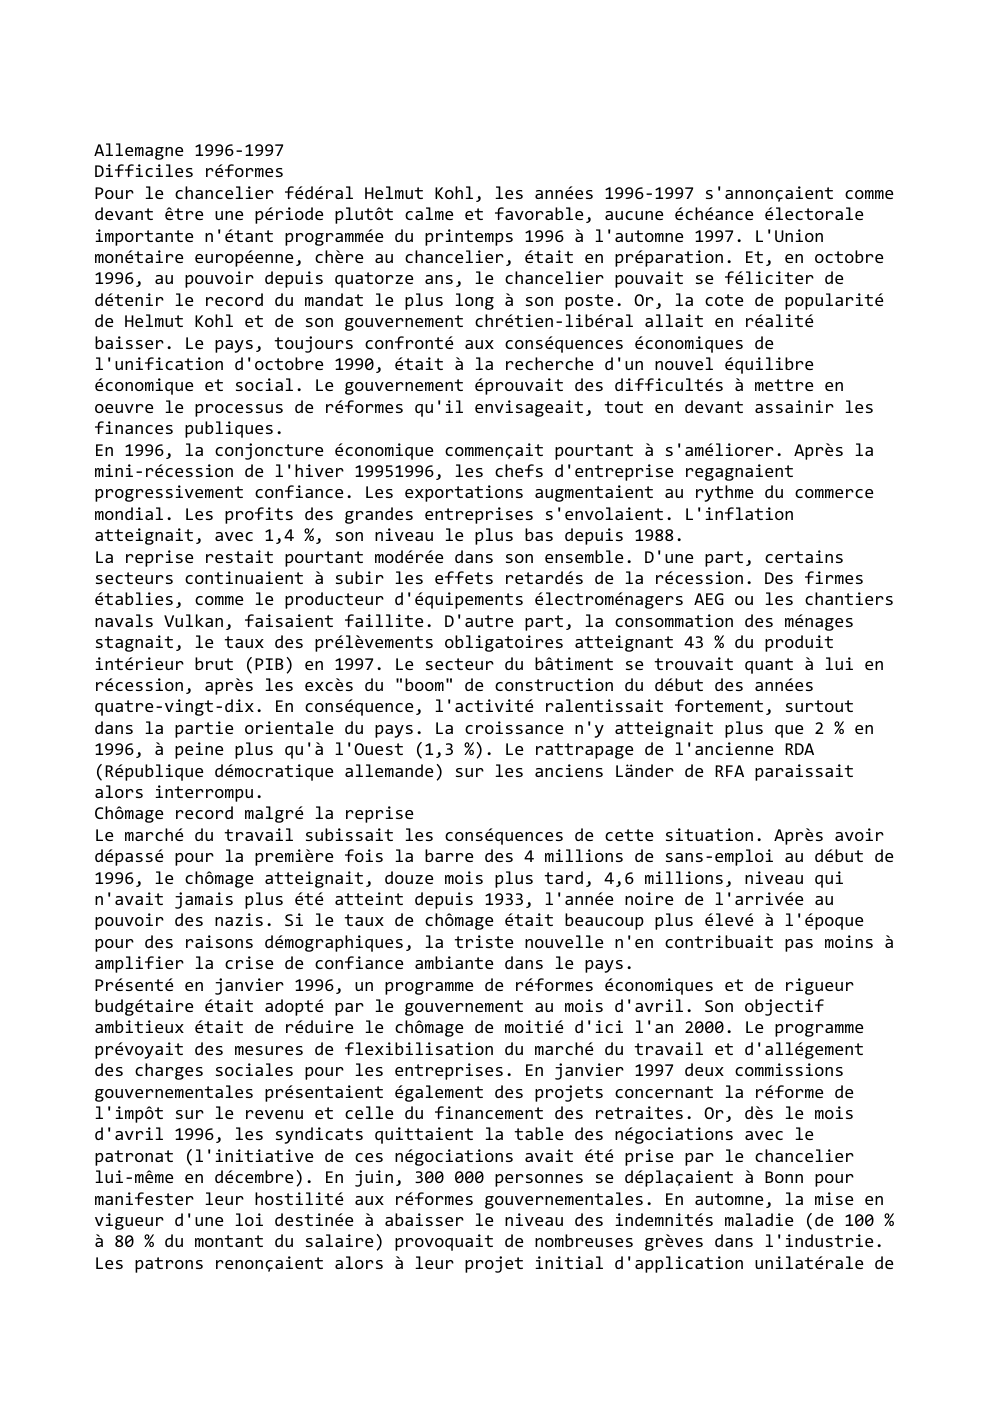 Prévisualisation du document Allemagne 1996-1997
Difficiles réformes
Pour le chancelier fédéral Helmut Kohl, les années 1996-1997 s'annonçaient comme
devant être une période plutôt...